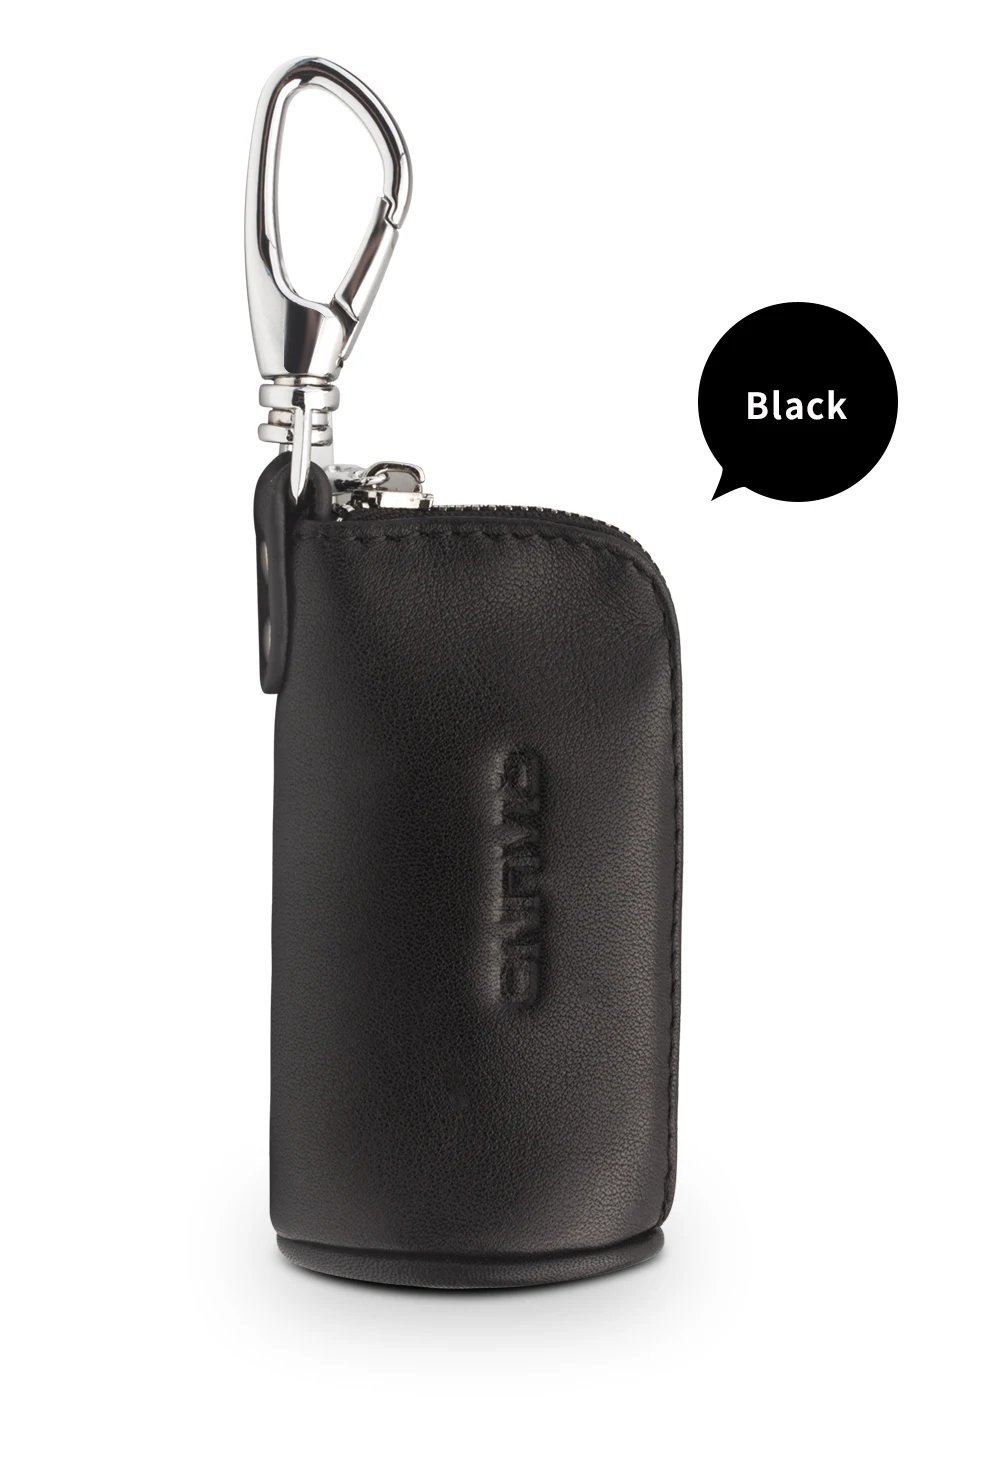 Qialino модные Портативный из натуральной кожи мини карман чехол для Apple airpods простая загрузка ключи от машины и монет кожа сумка